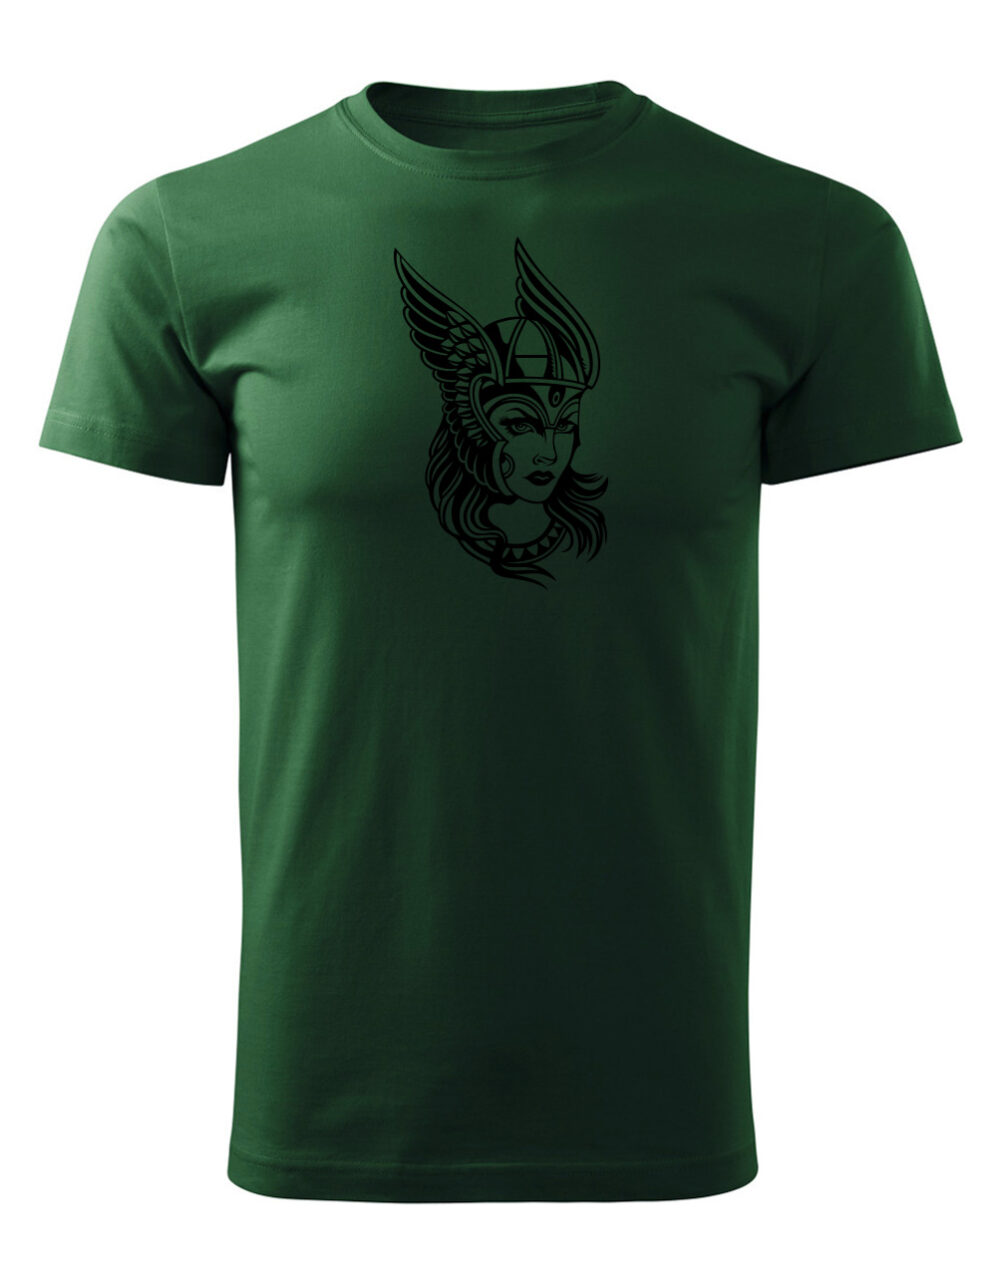 Pánské tričko s potiskem Valkýra lahvová zelená